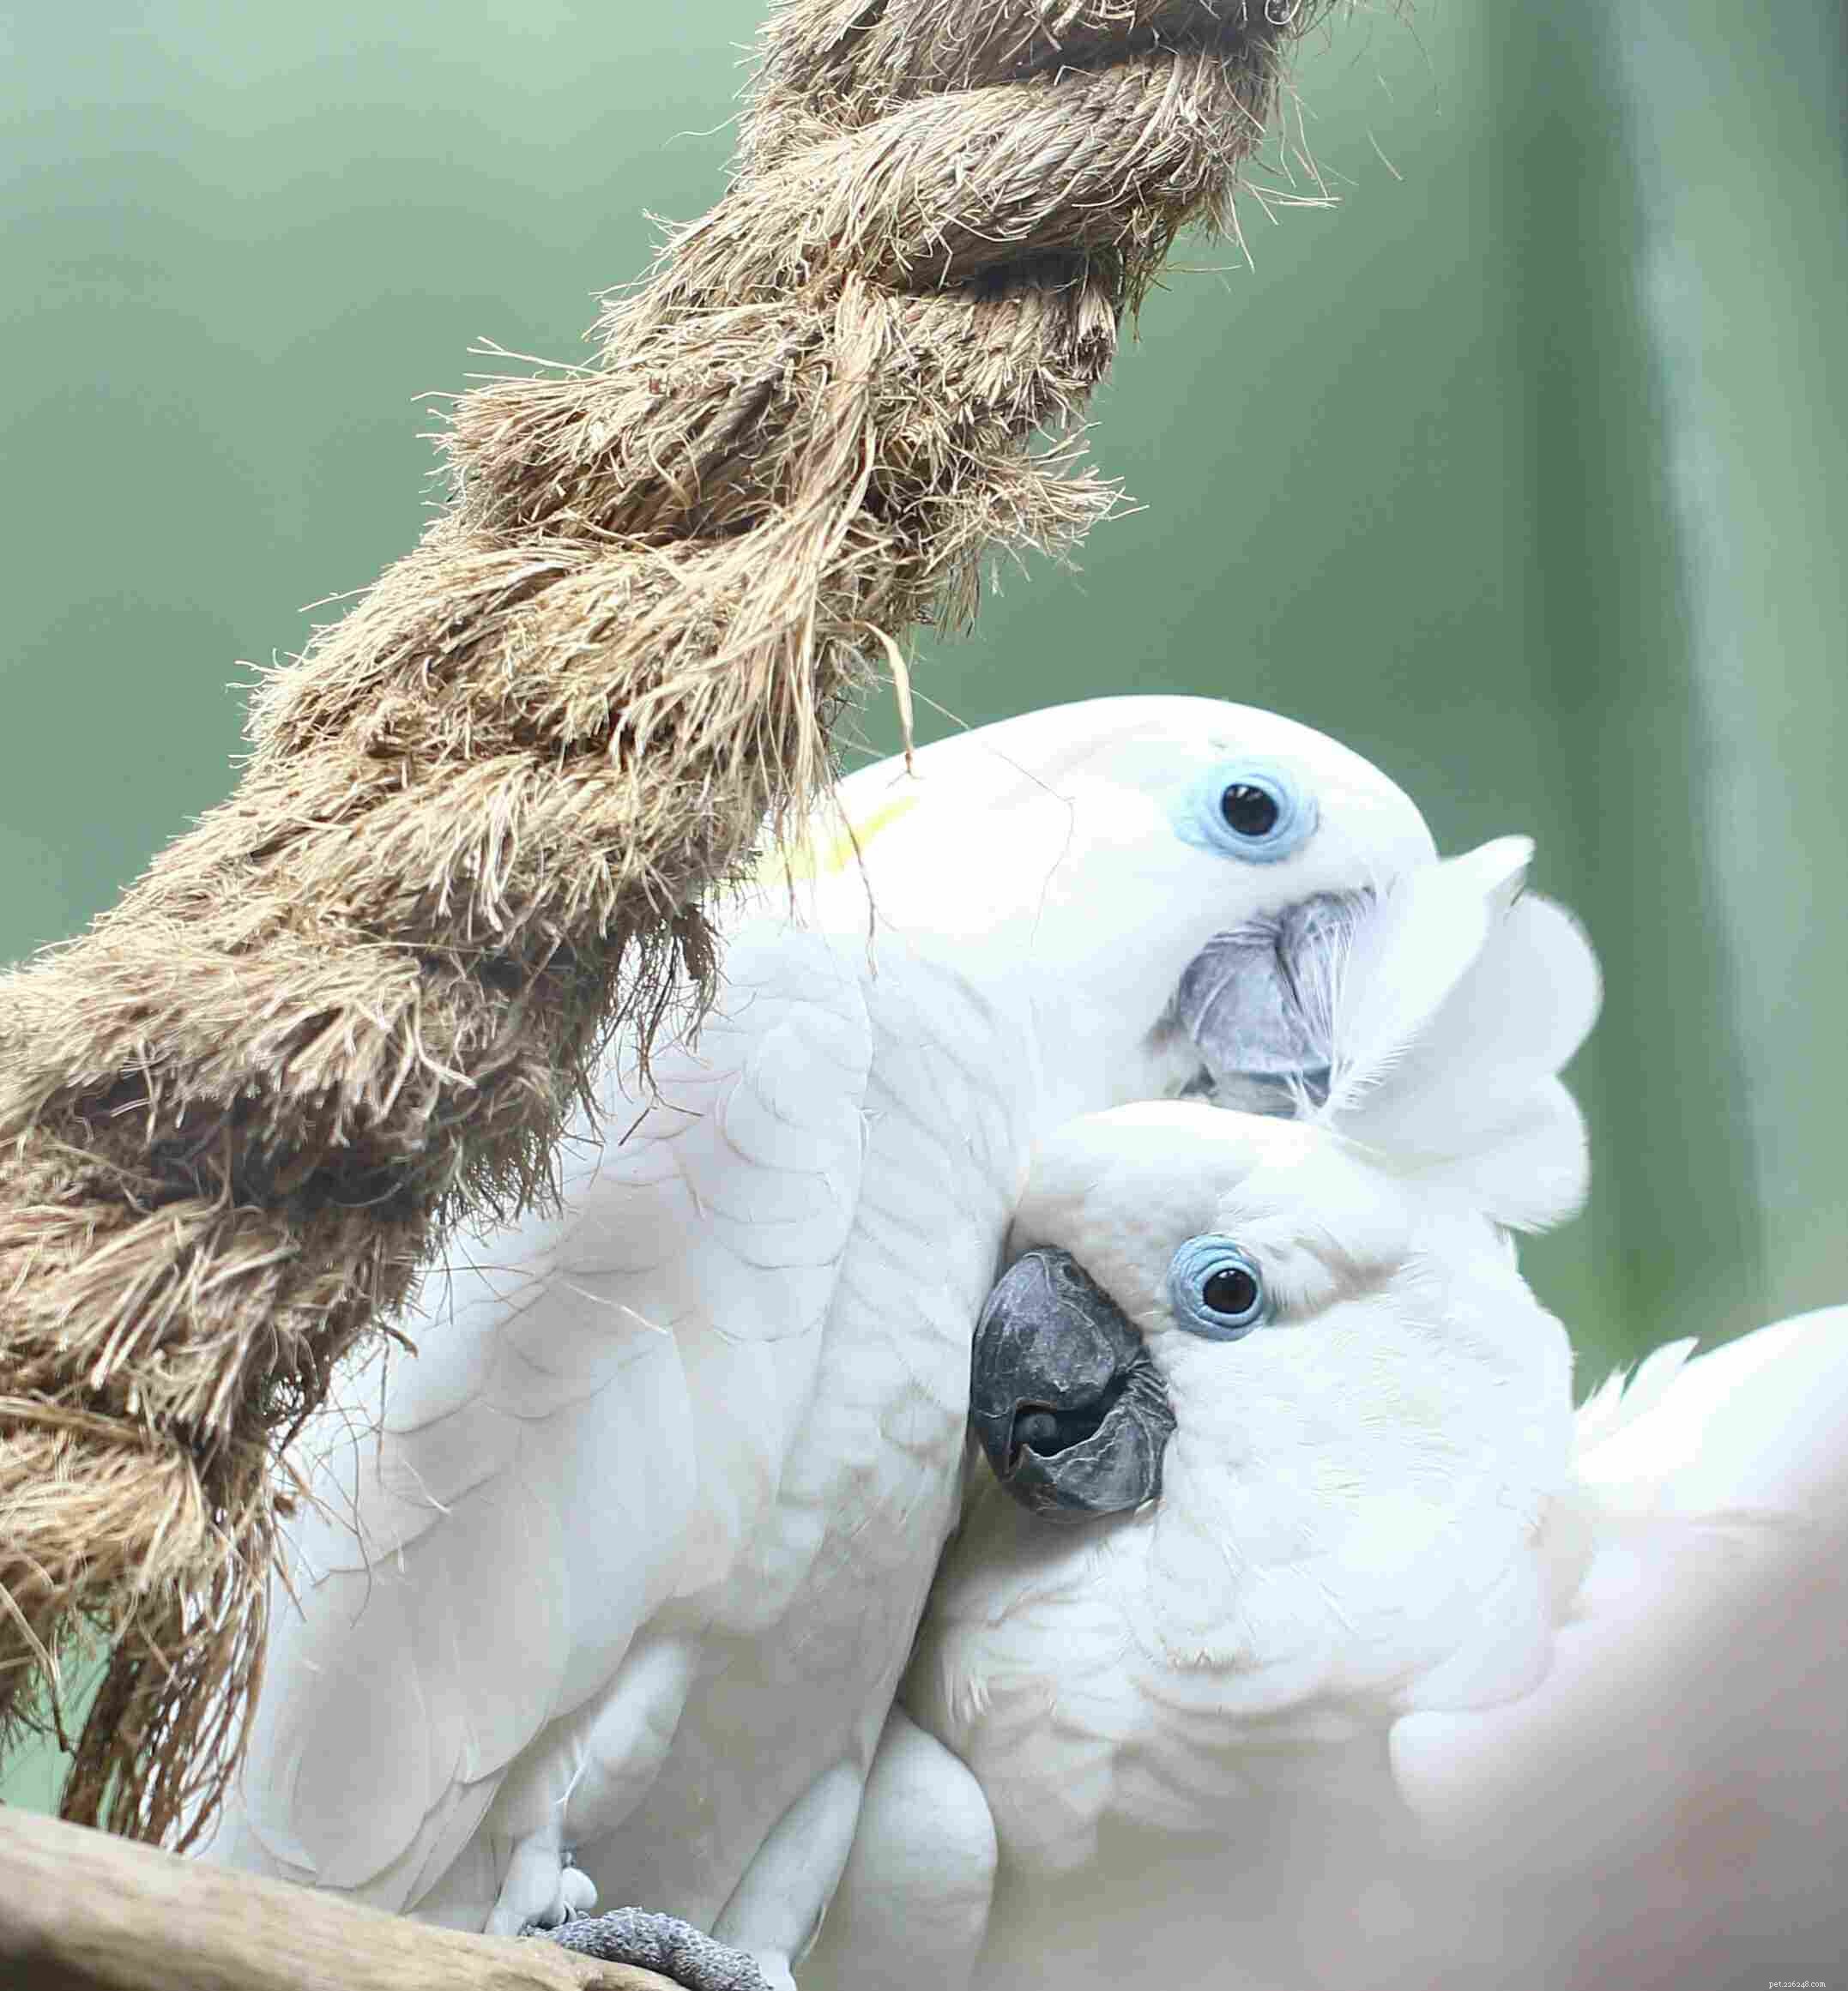 10가지 최고의 애완용 앵무새 종